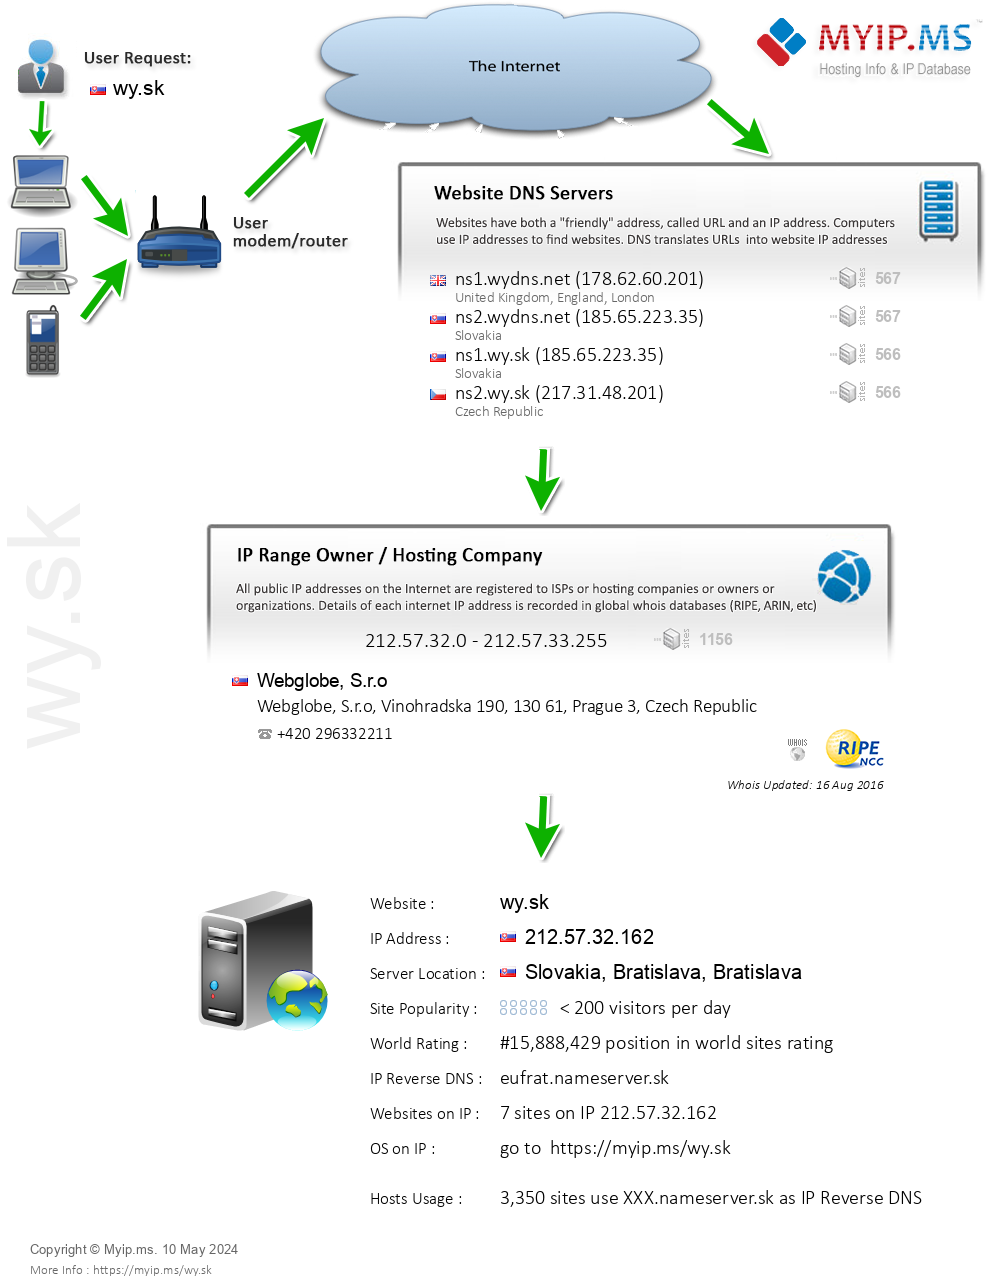 Wy.sk - Website Hosting Visual IP Diagram